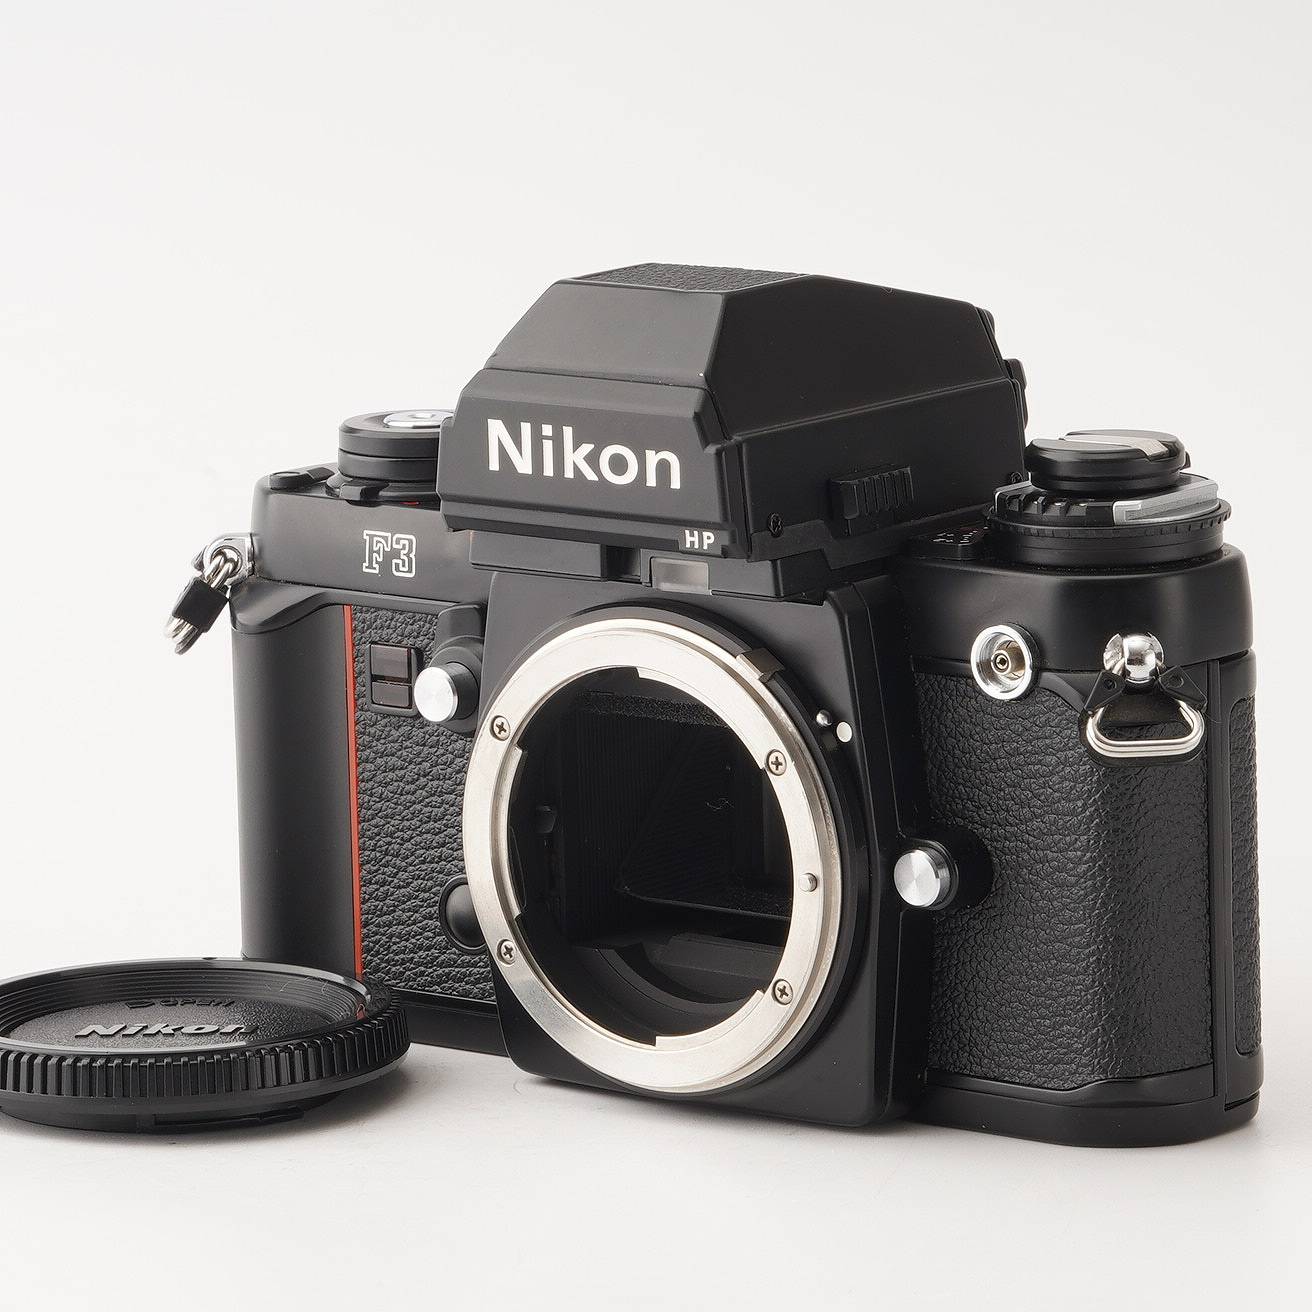 MOCOのカメラ一覧はこちら【希少】 Nikon ニコン F3 HP ボディ 177万台 